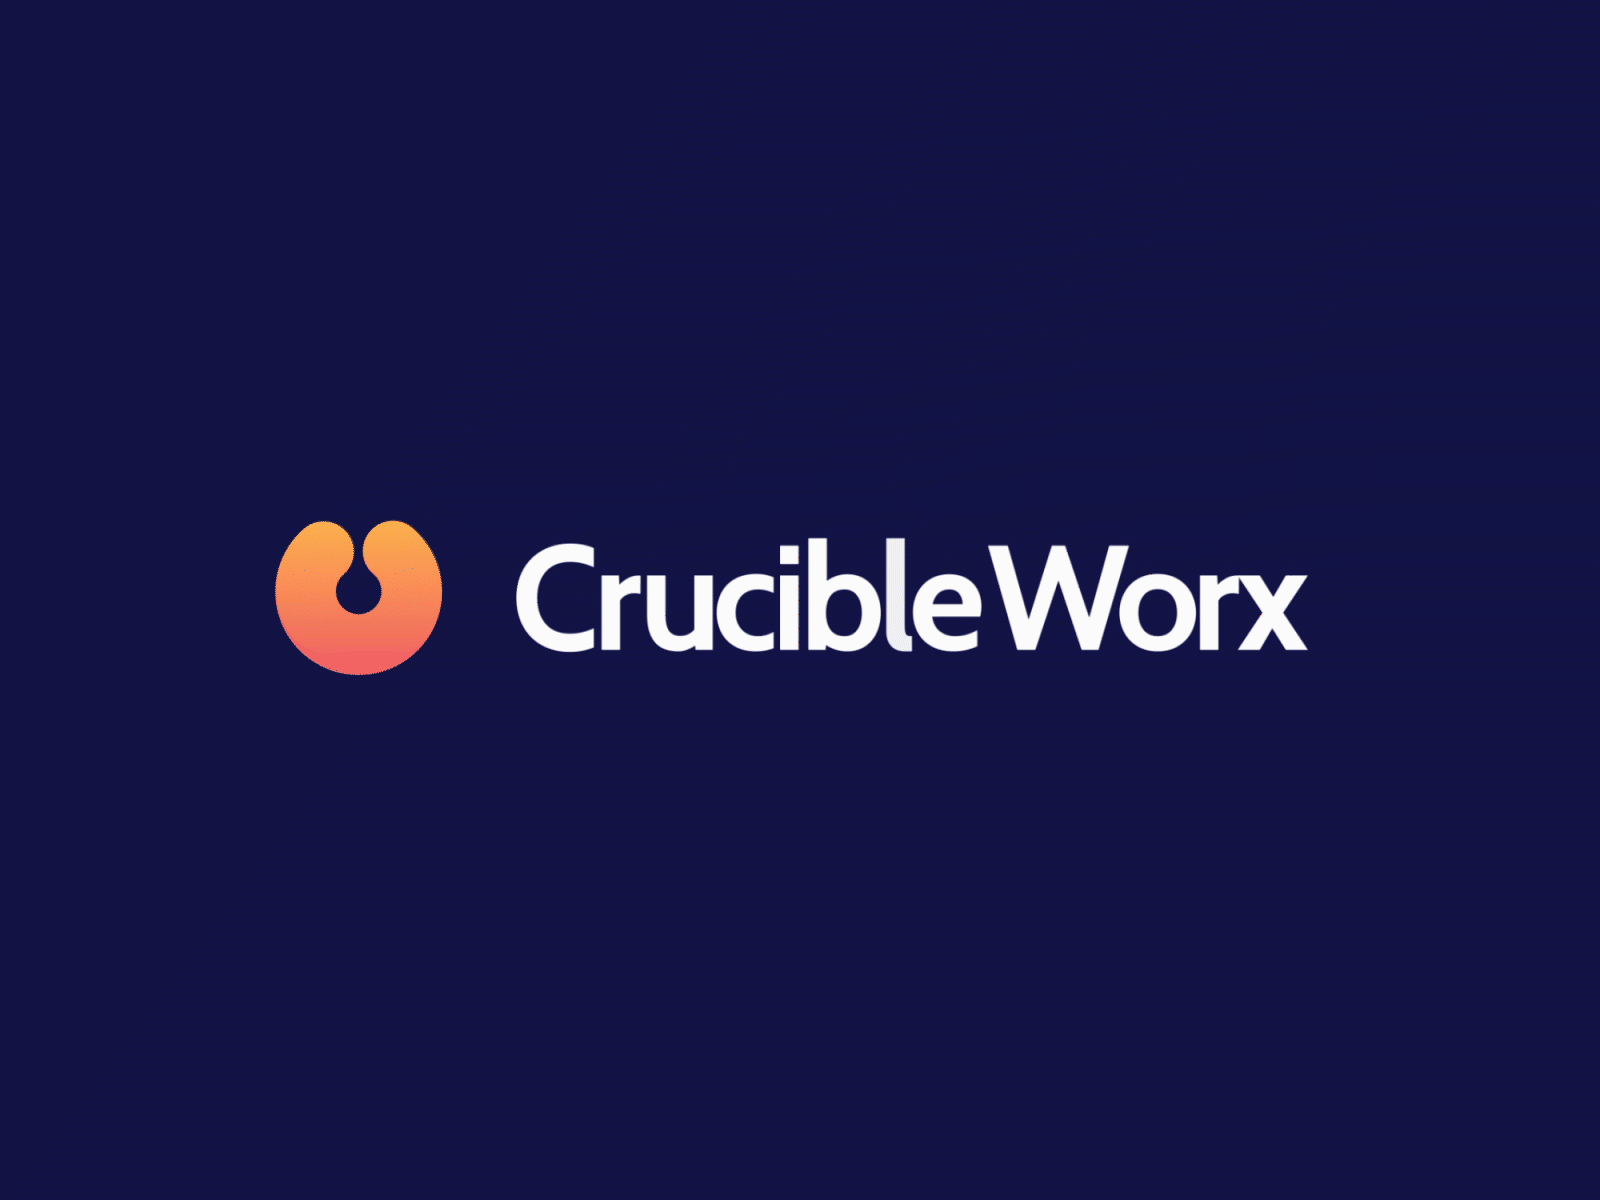 CrucibleWorx logo animation